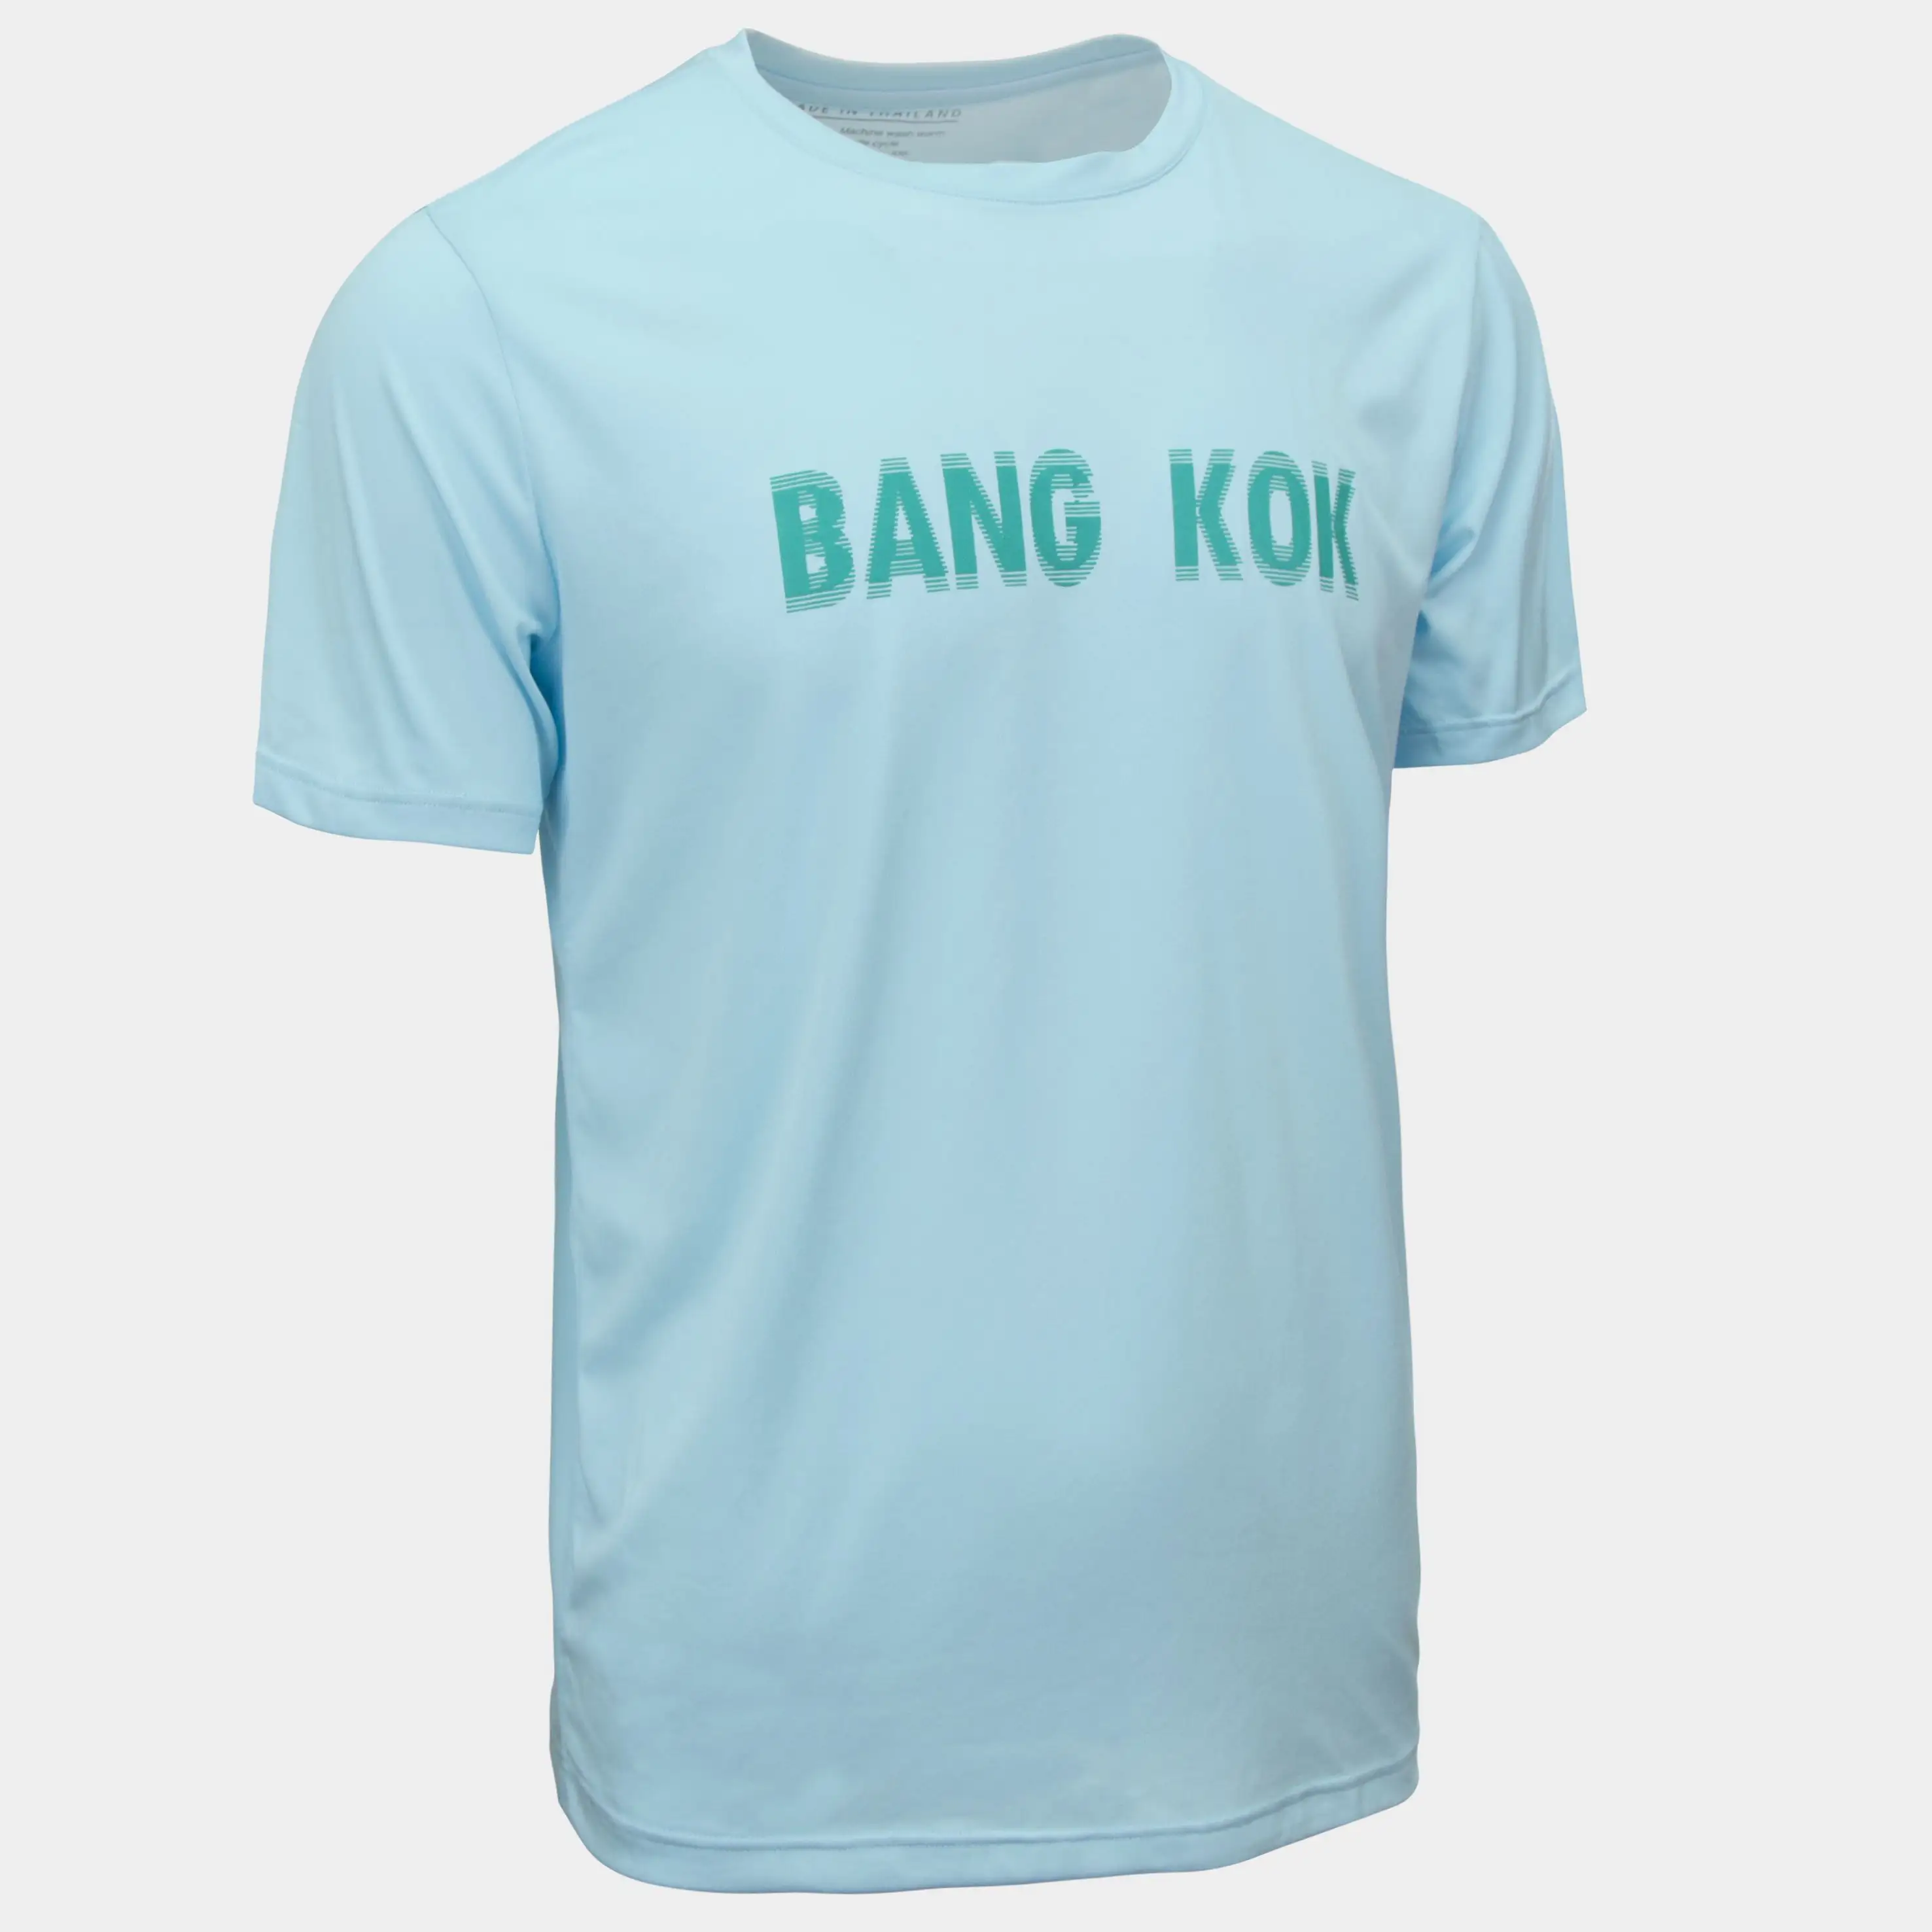 Oネック & ポリエステル & コットンBANGKOK Tシャツ半袖ベトナム製ターコイズ